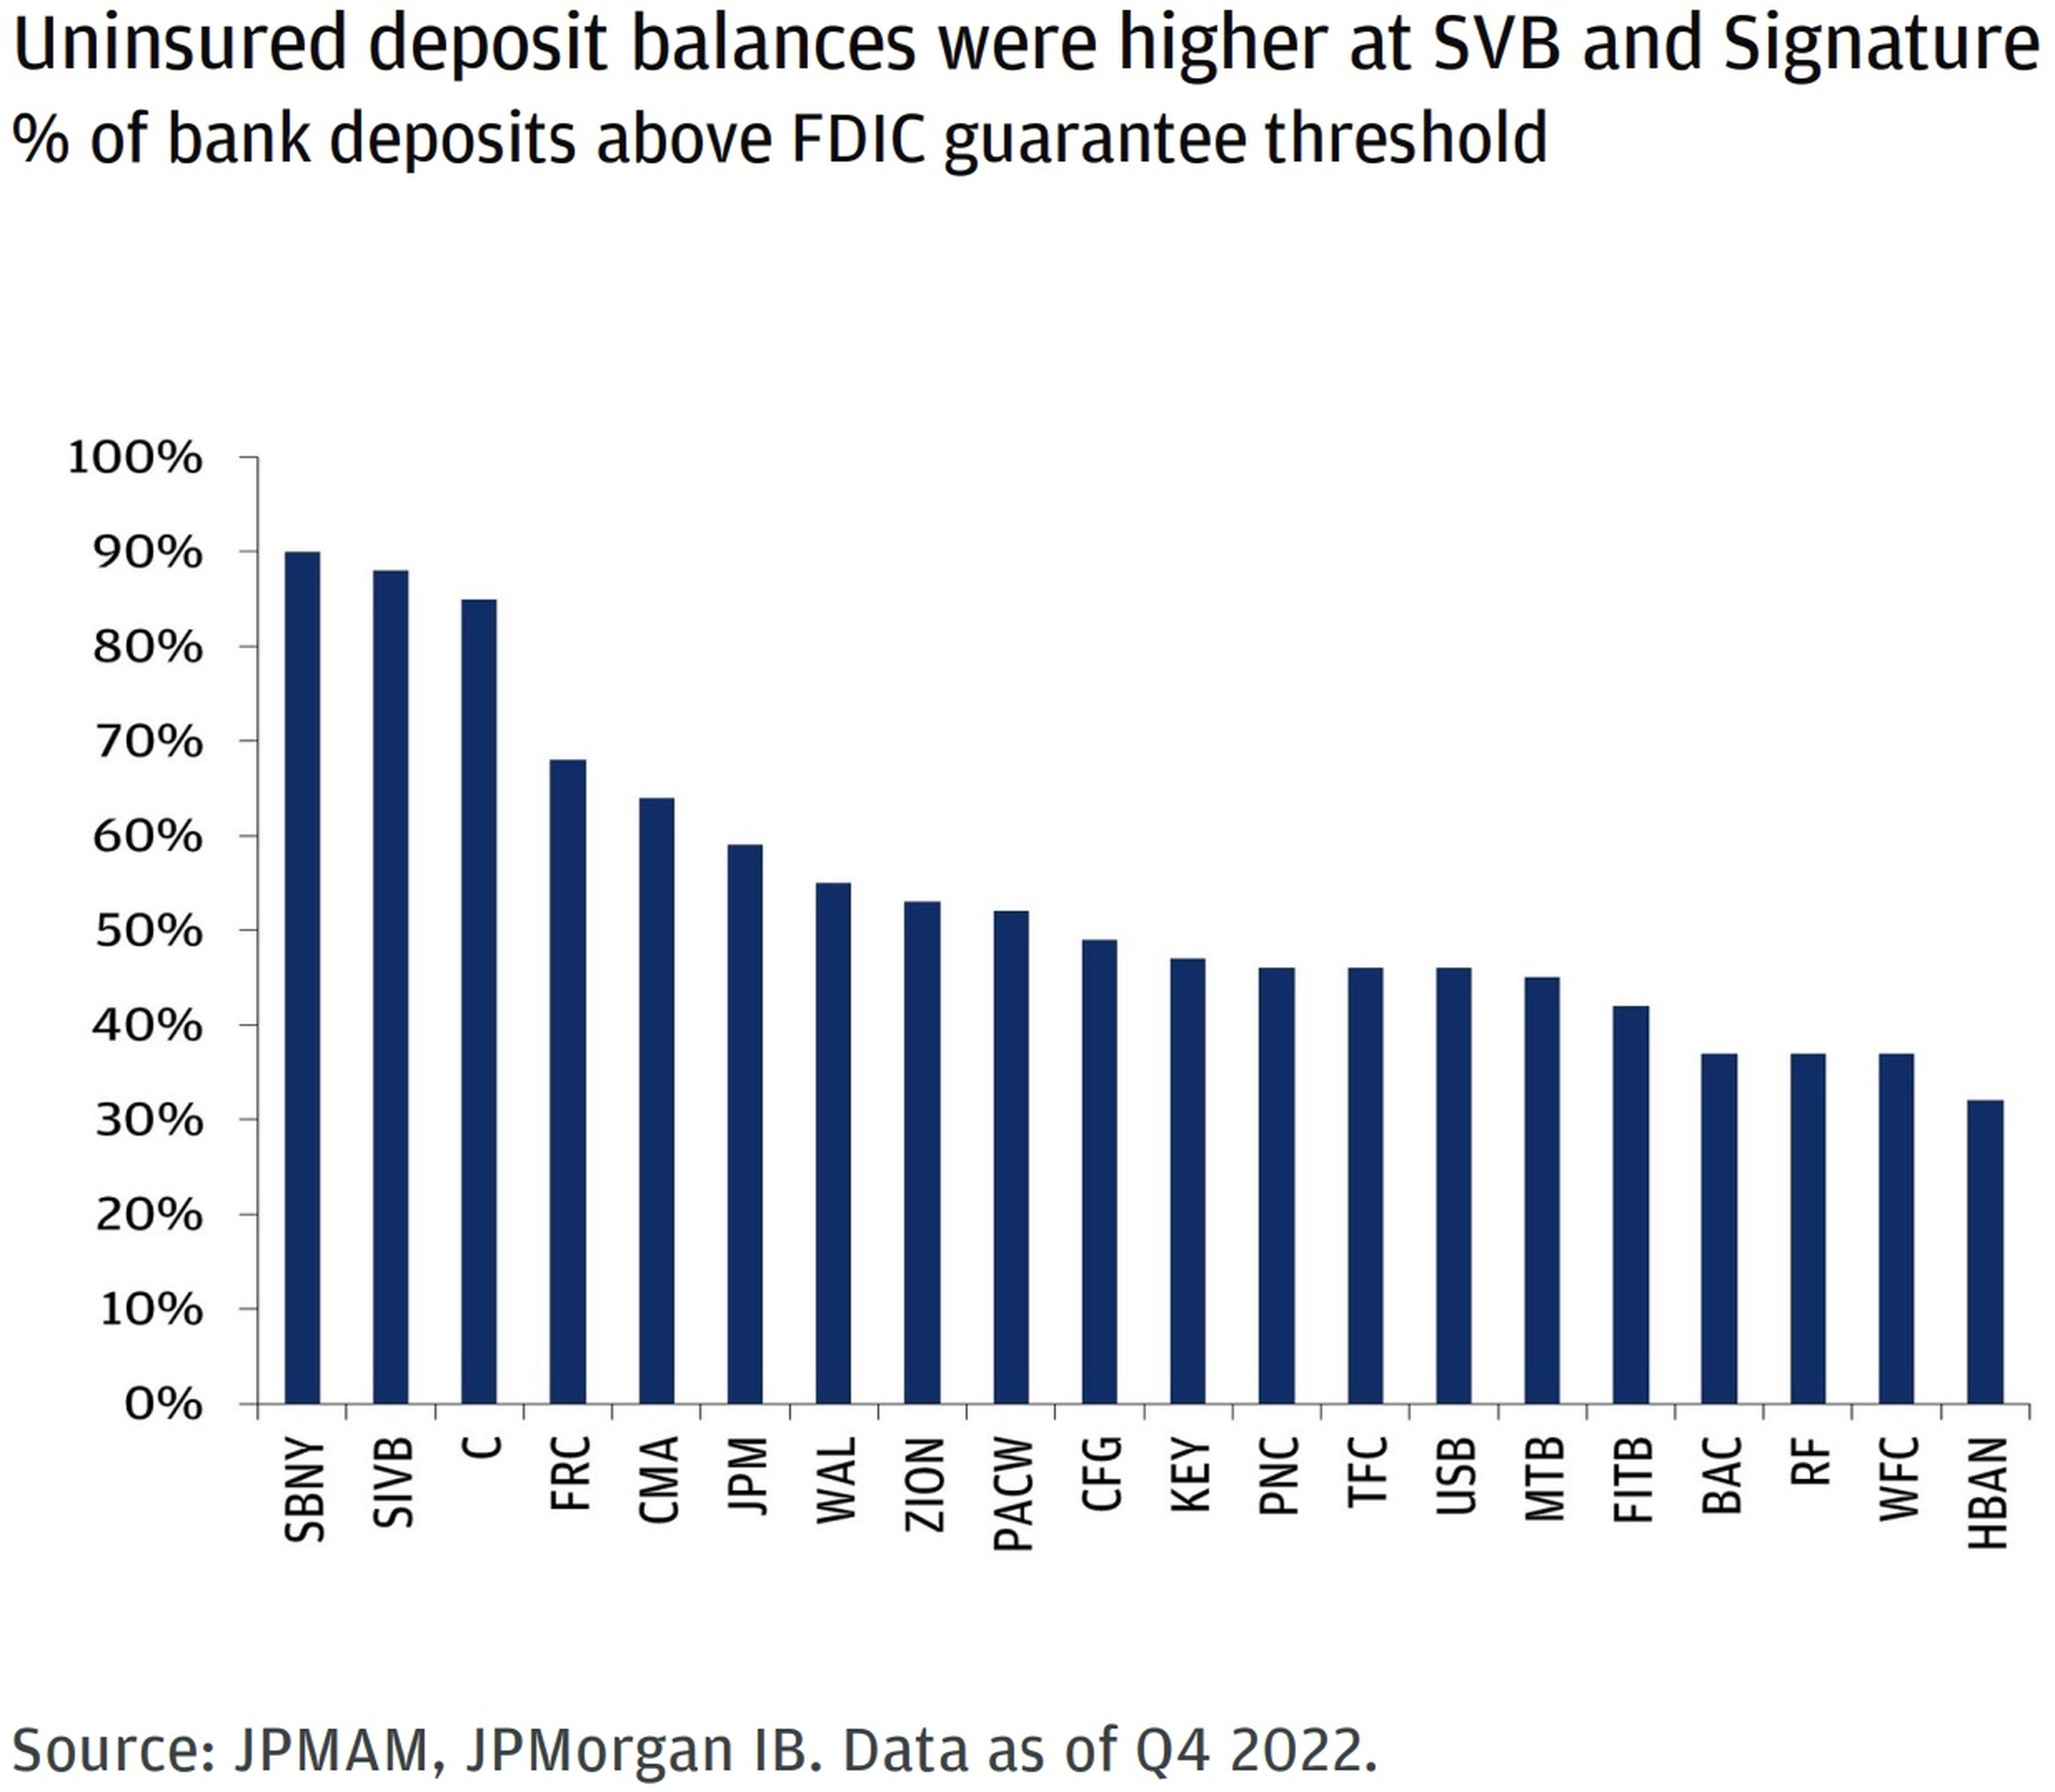 Los saldos de los depósitos no asegurados eran superiores en SVB y Signature respecto al umbral de garantía de depósitos de la FDIC.